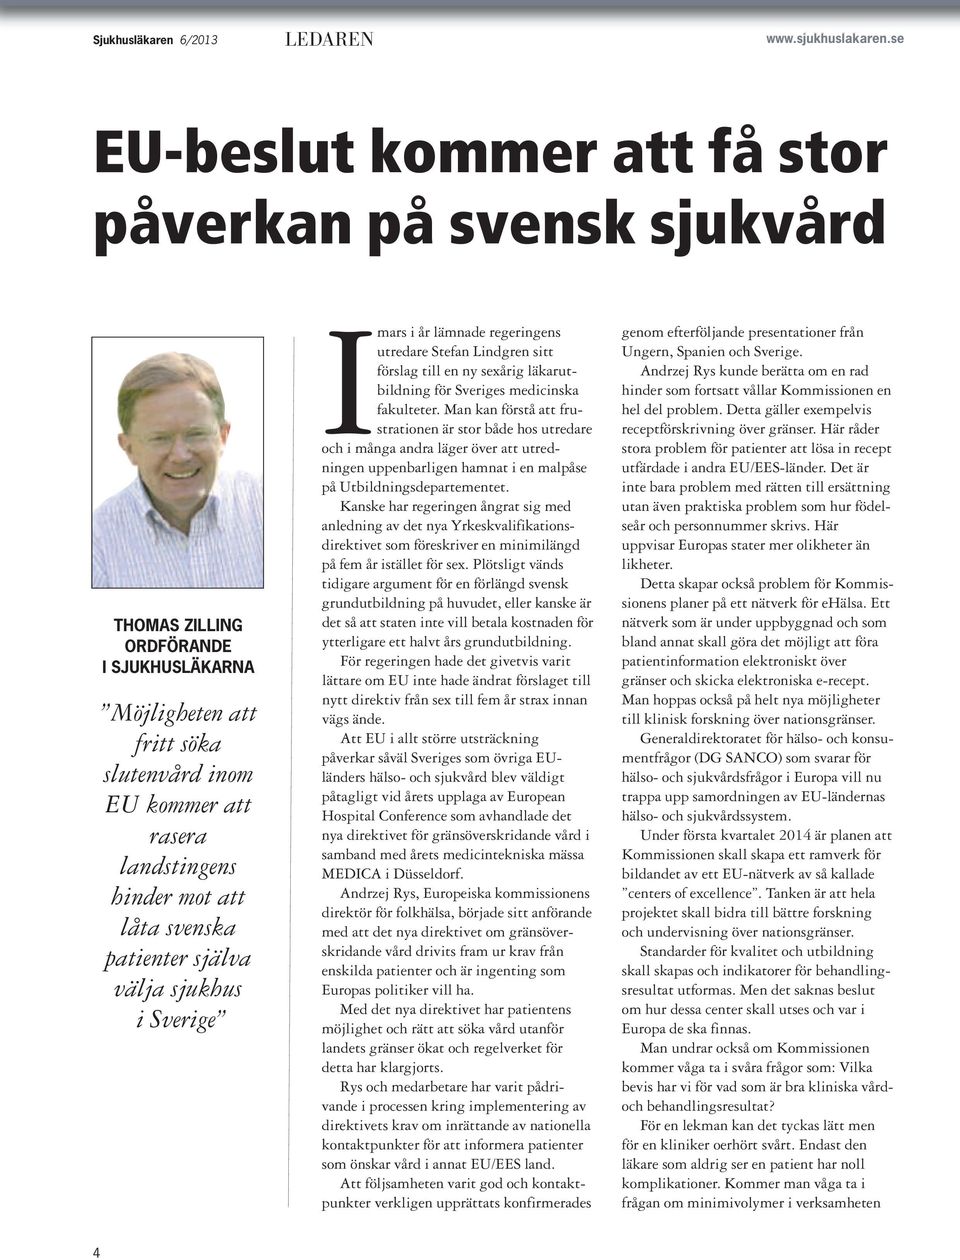 svenska patienter själva välja sjukhus i Sverige Imars i år lämnade regeringens utredare Stefan Lindgren sitt förslag till en ny sexårig läkarutbildning för Sveriges medicinska fakulteter.